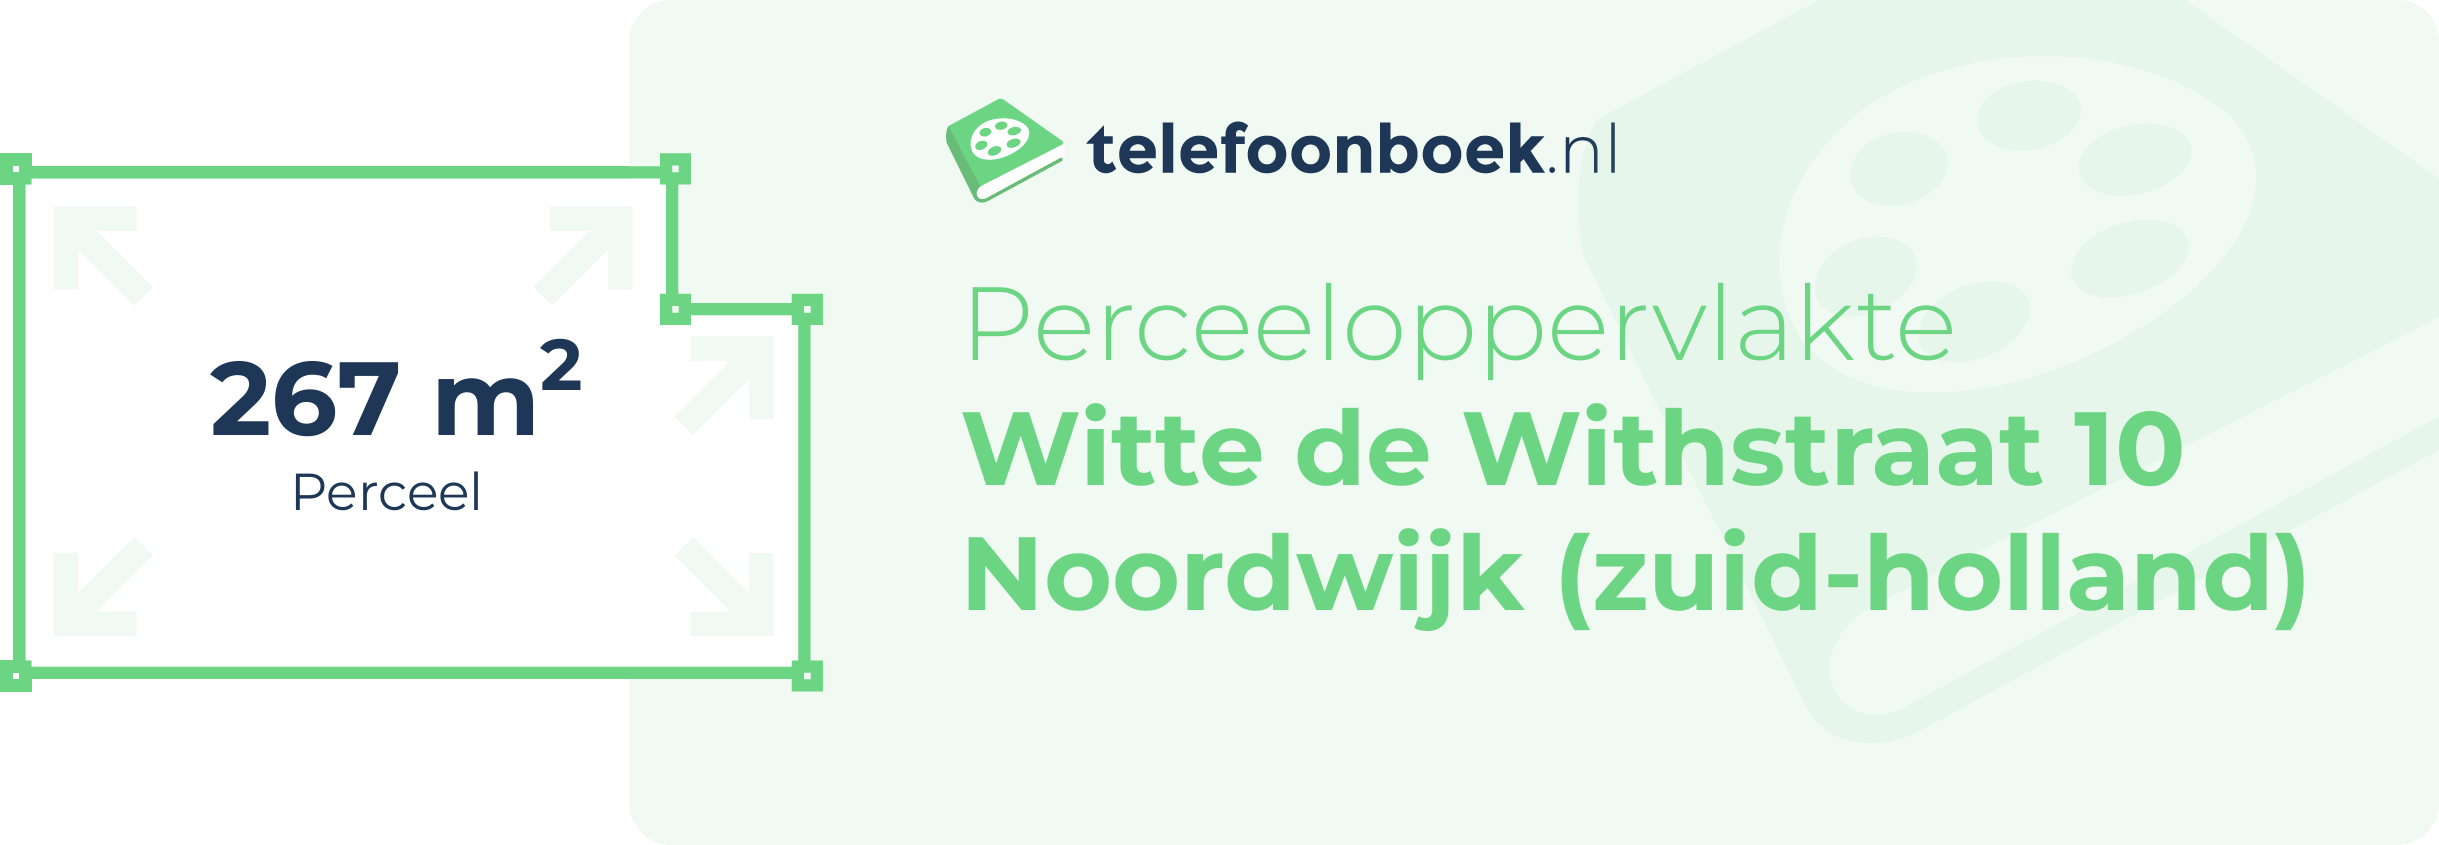 Perceeloppervlakte Witte De Withstraat 10 Noordwijk (Zuid-Holland)